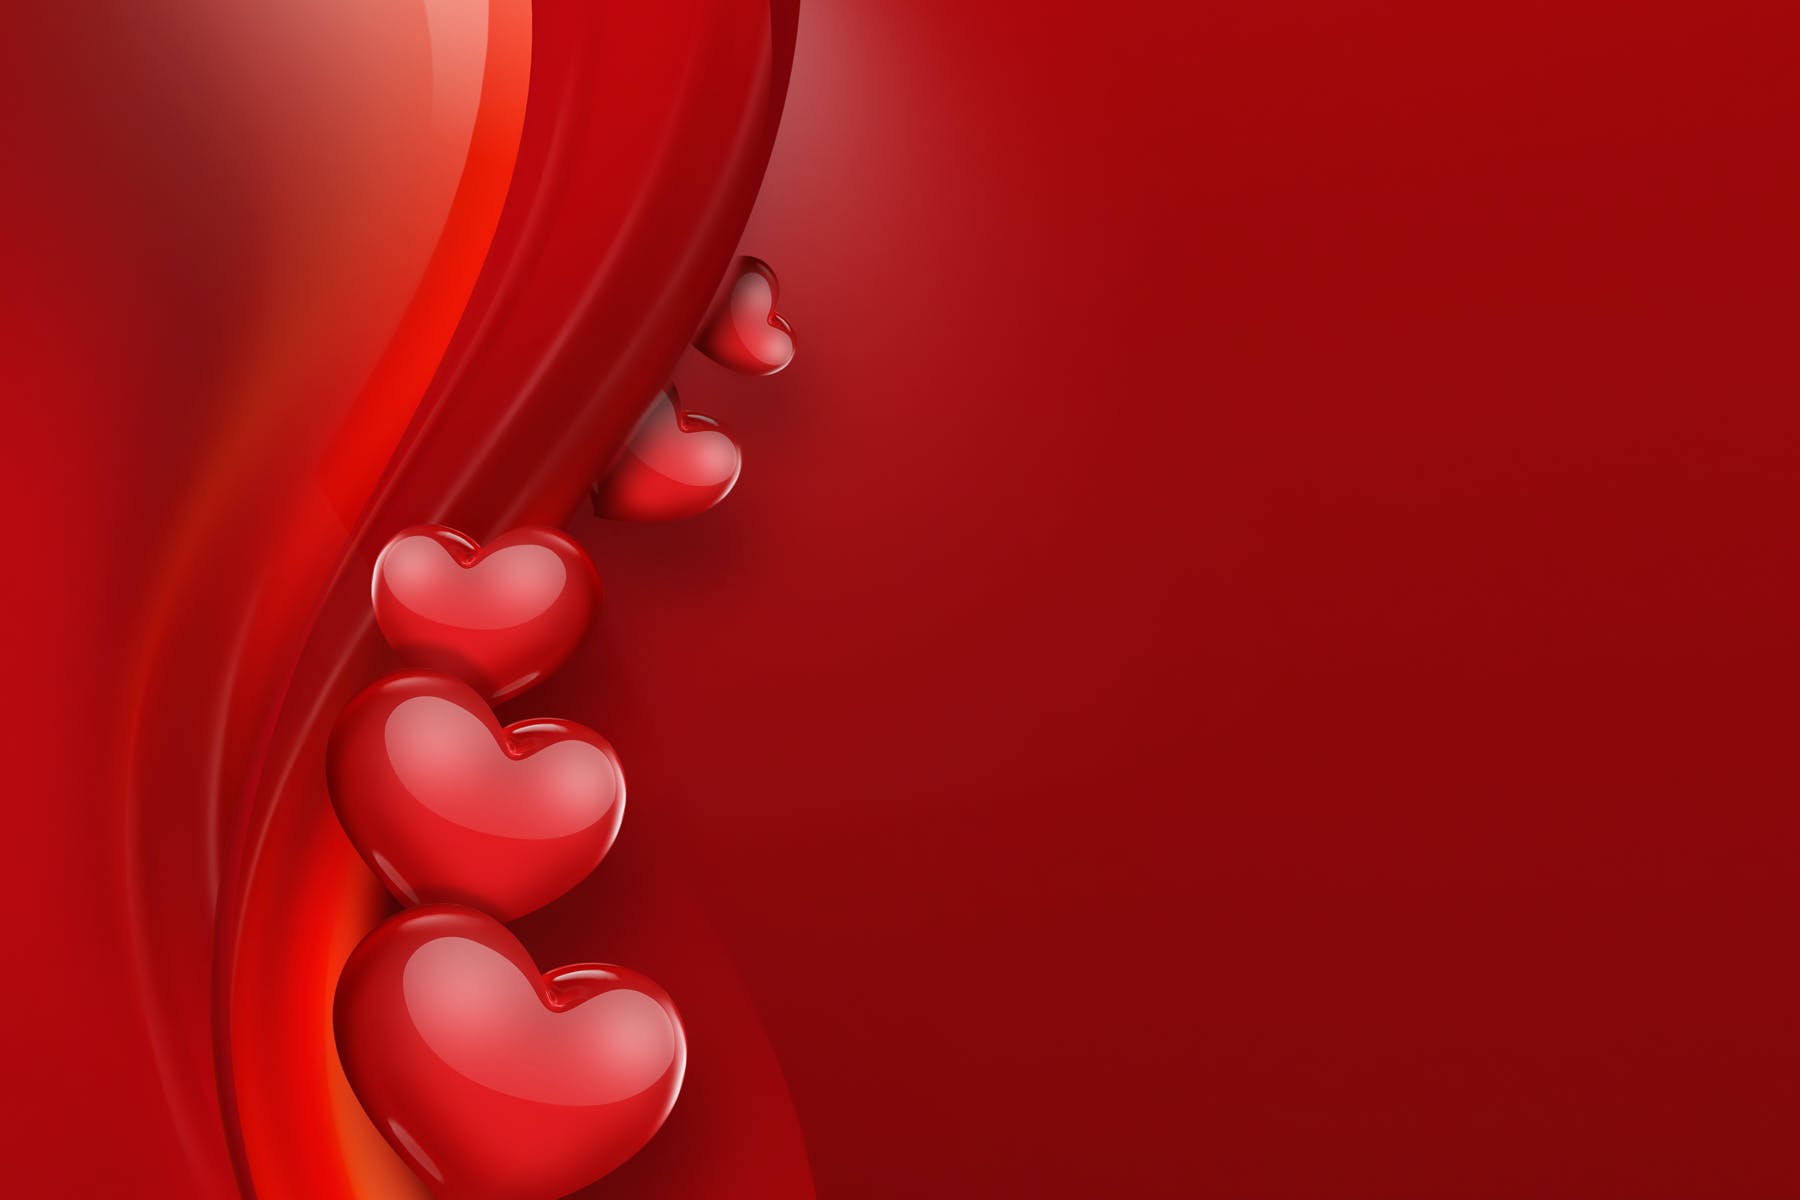 红心爱心红色背景情人节素材v2 Red Hearts On A Red Background 图片素材 第1张